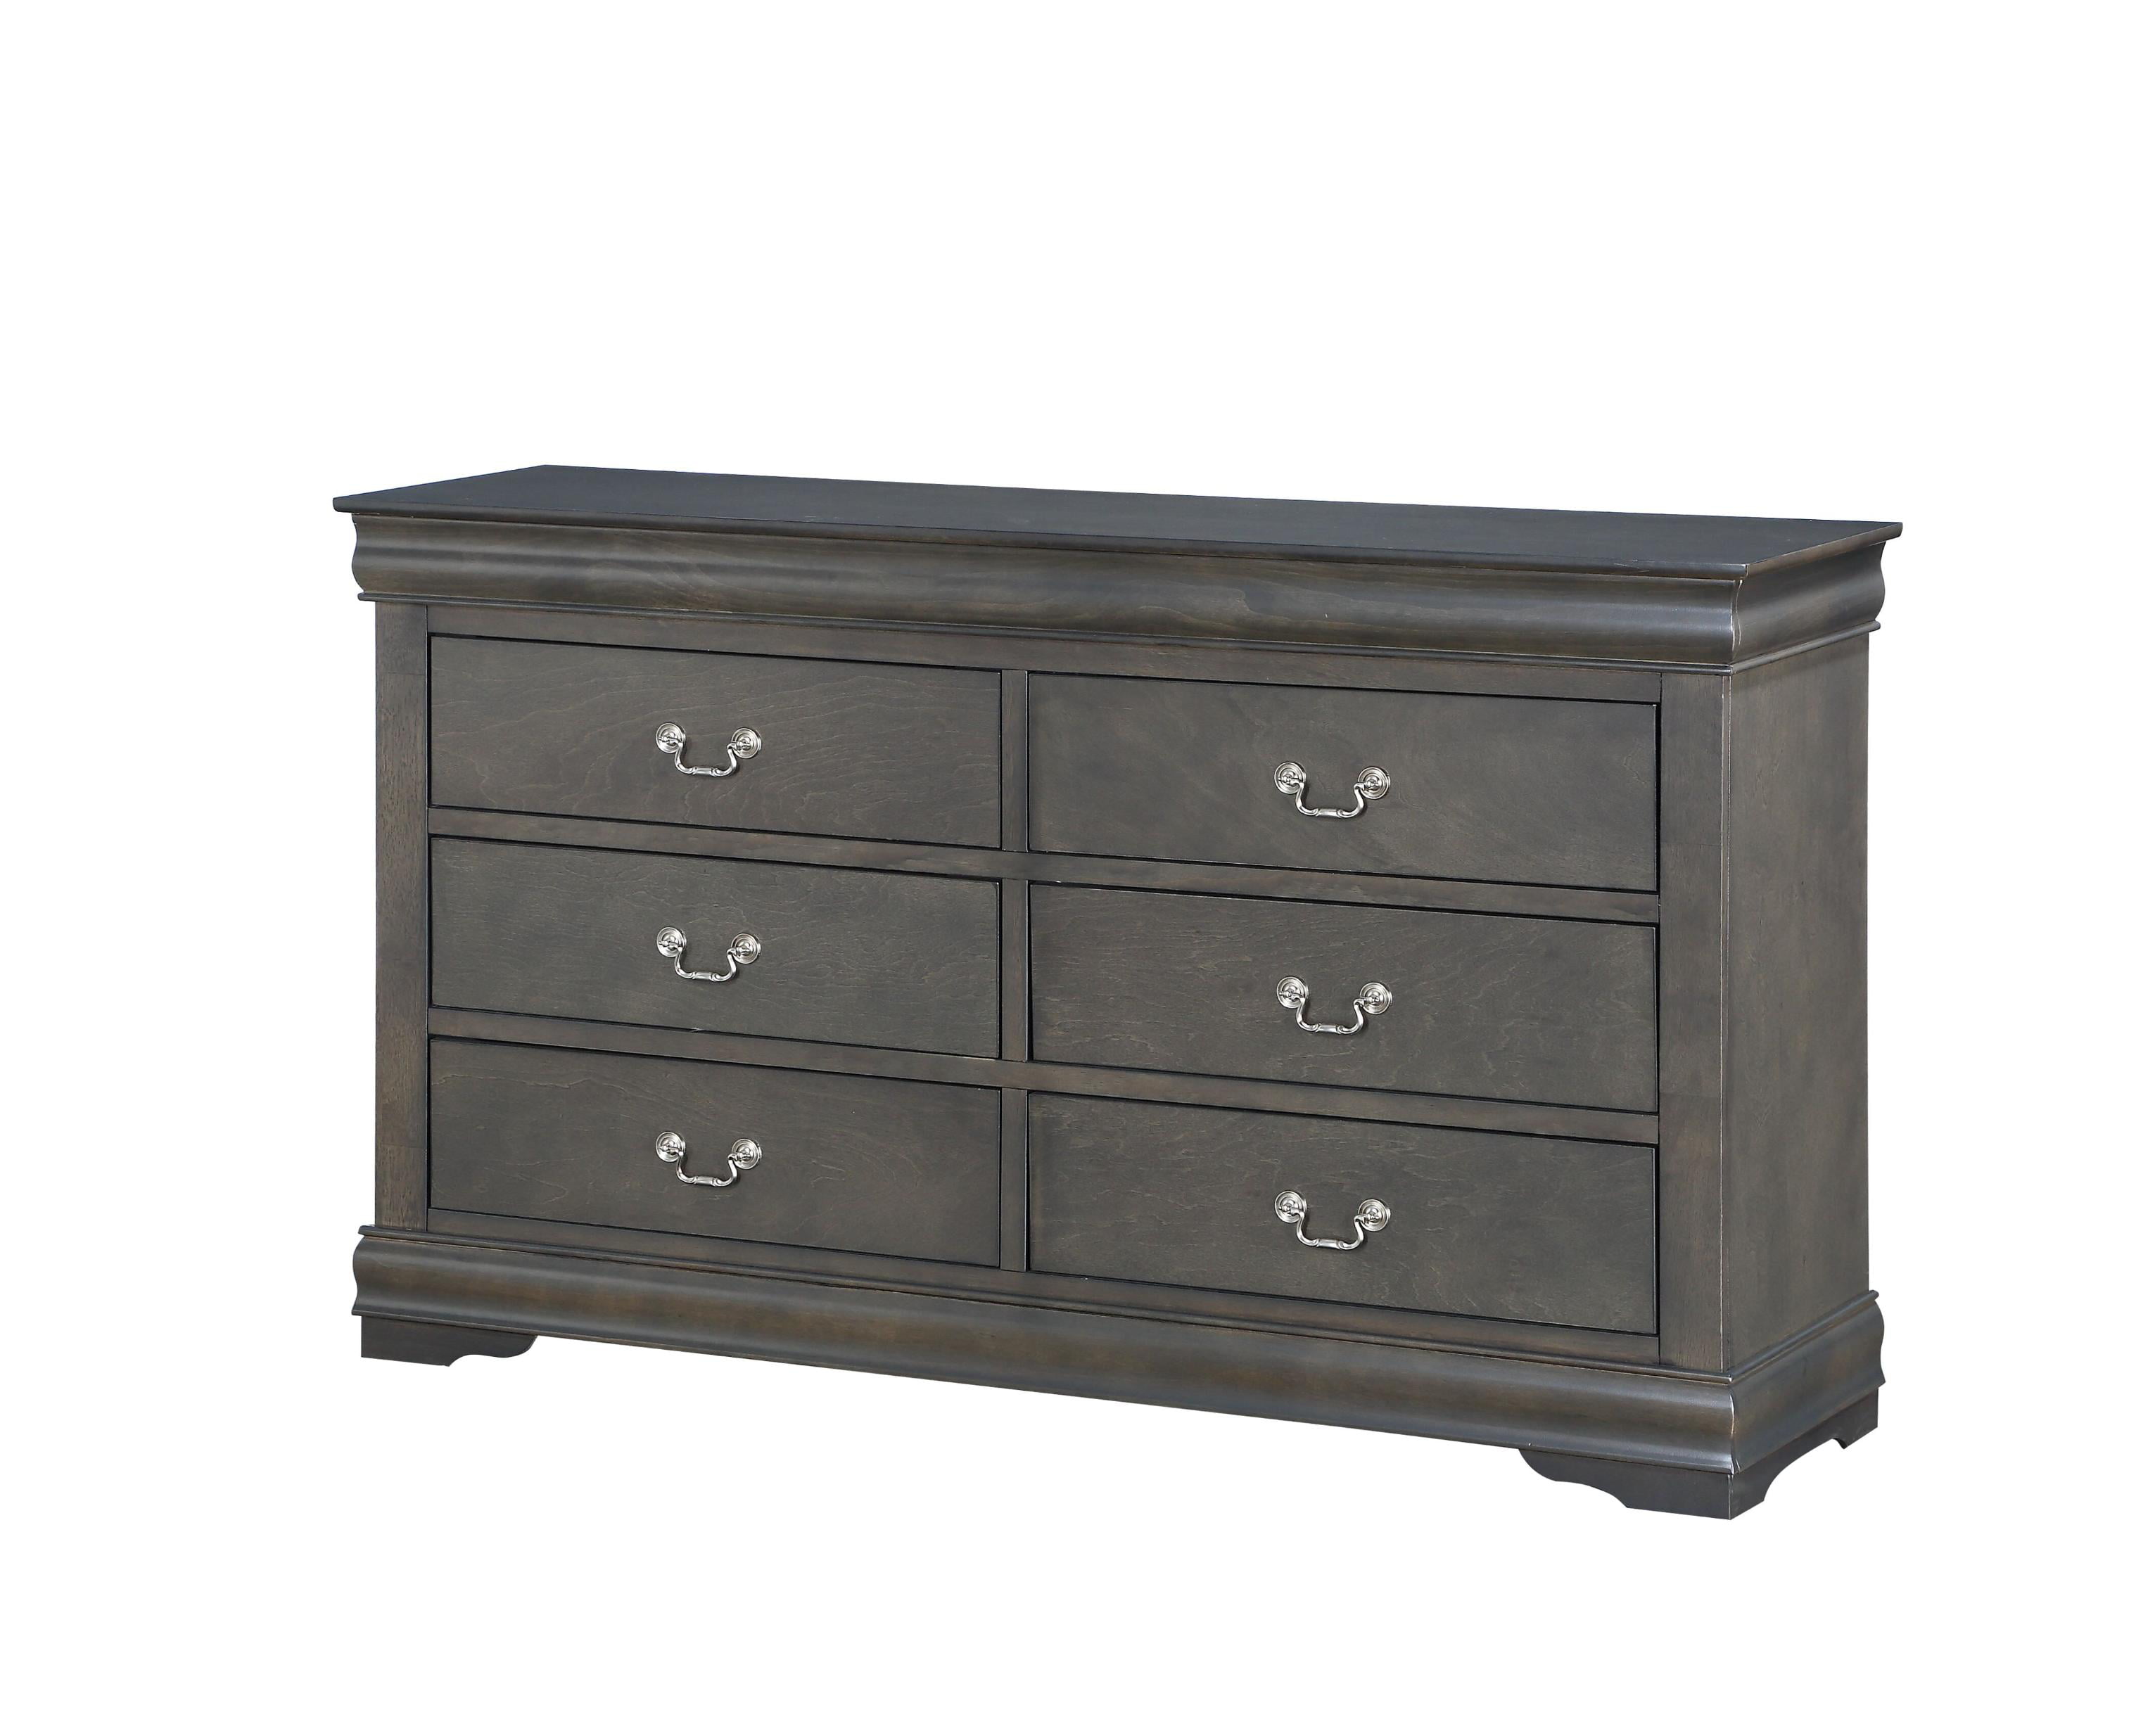 15 X 57 33 Dark Gray Wood Dresser, White And Dark Wood Dresser